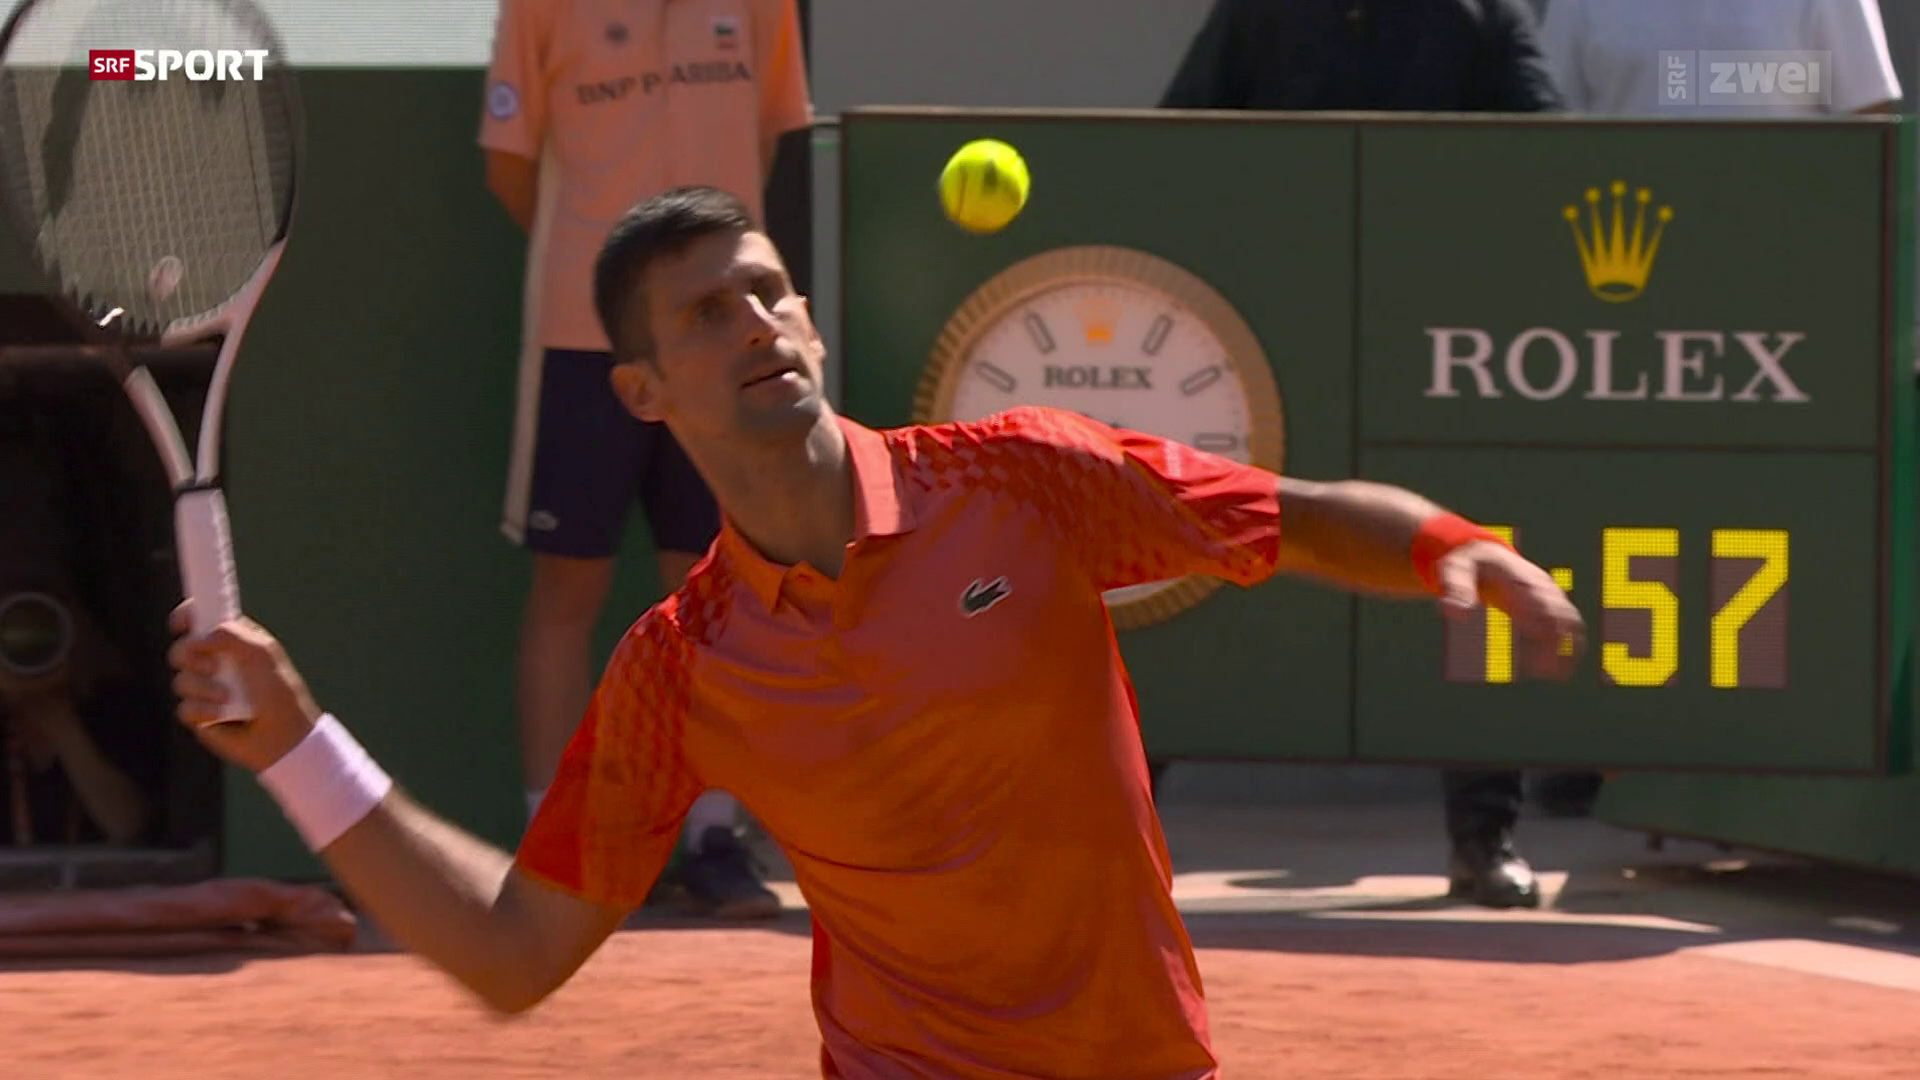 French Open Round-up Männer - Djokovic stellt Bestmarke auf